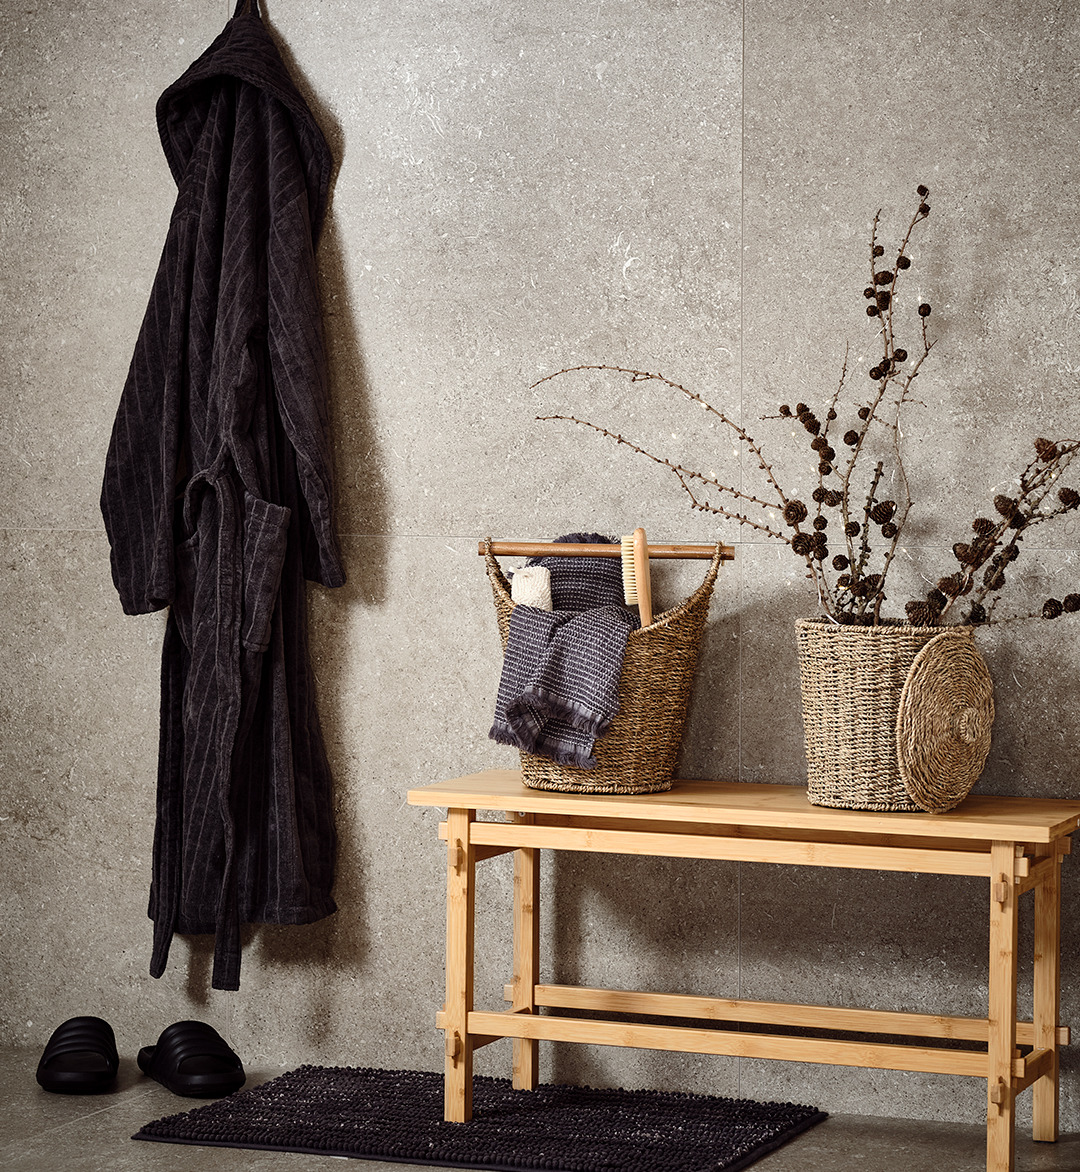 Accappatoio in cotone grigio, cesti e asciugamani su una panca in bambù